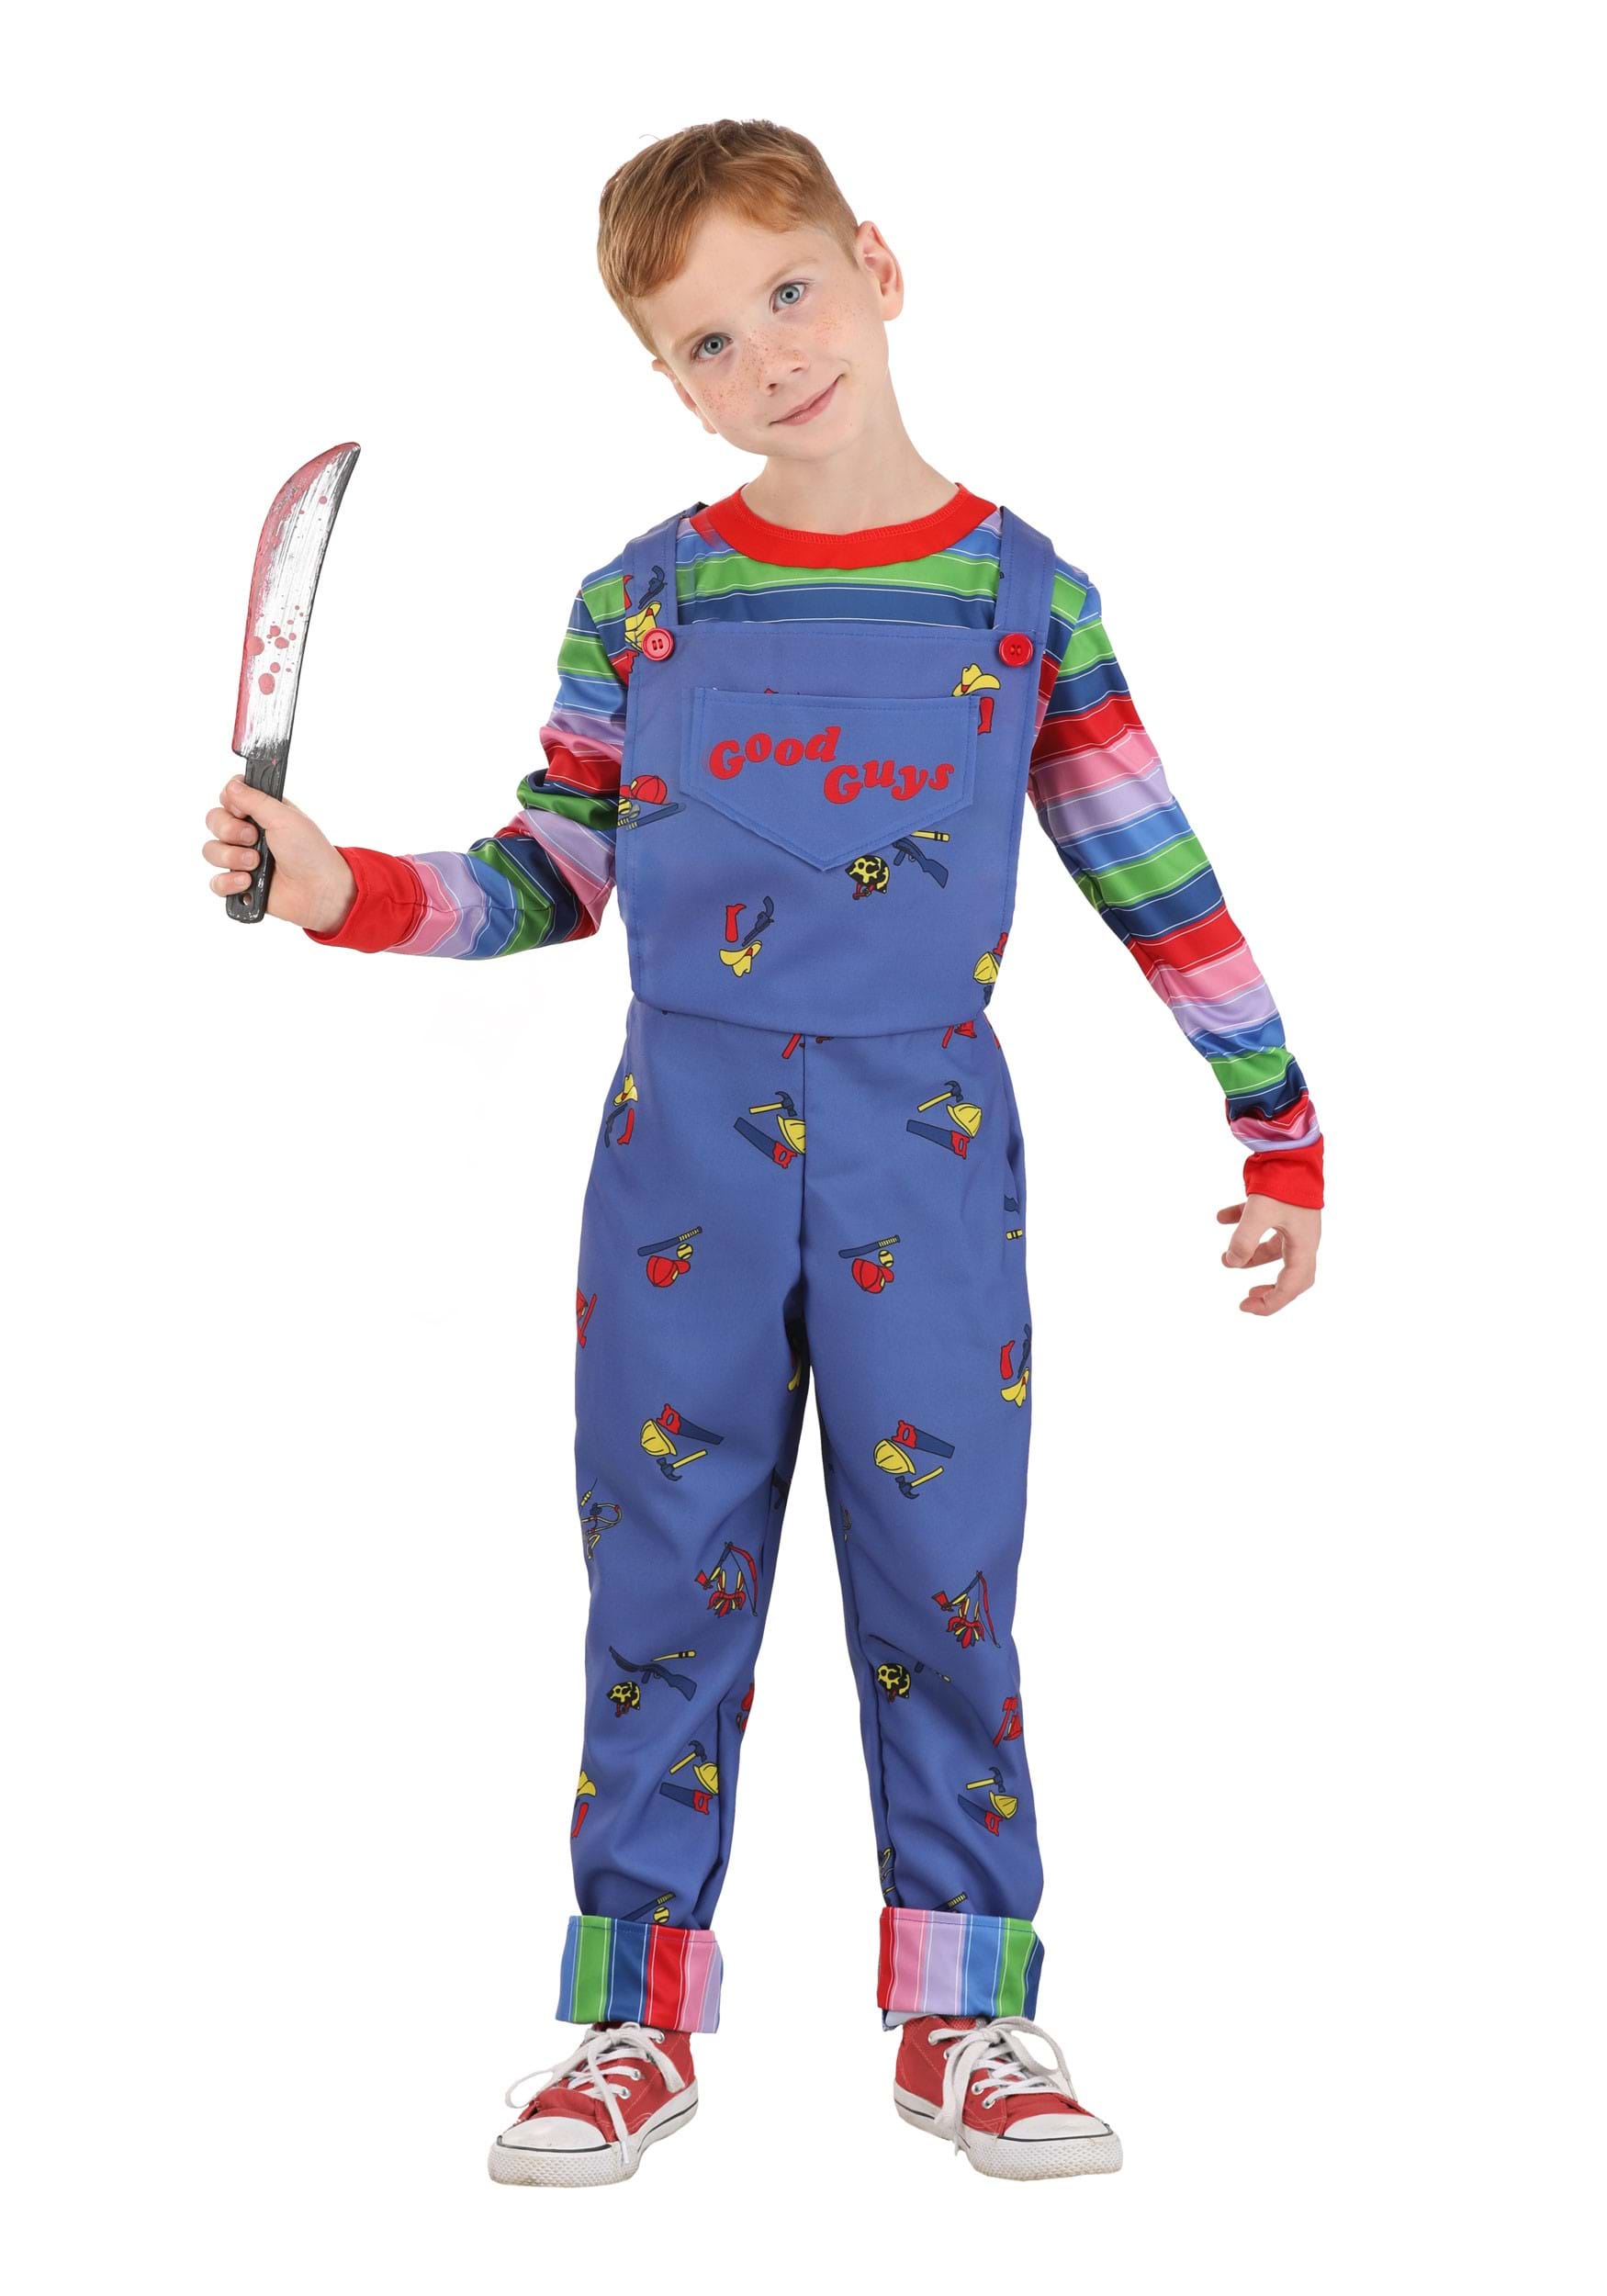 Disfraz de Chucky Boy Boy Multicolor Colombia